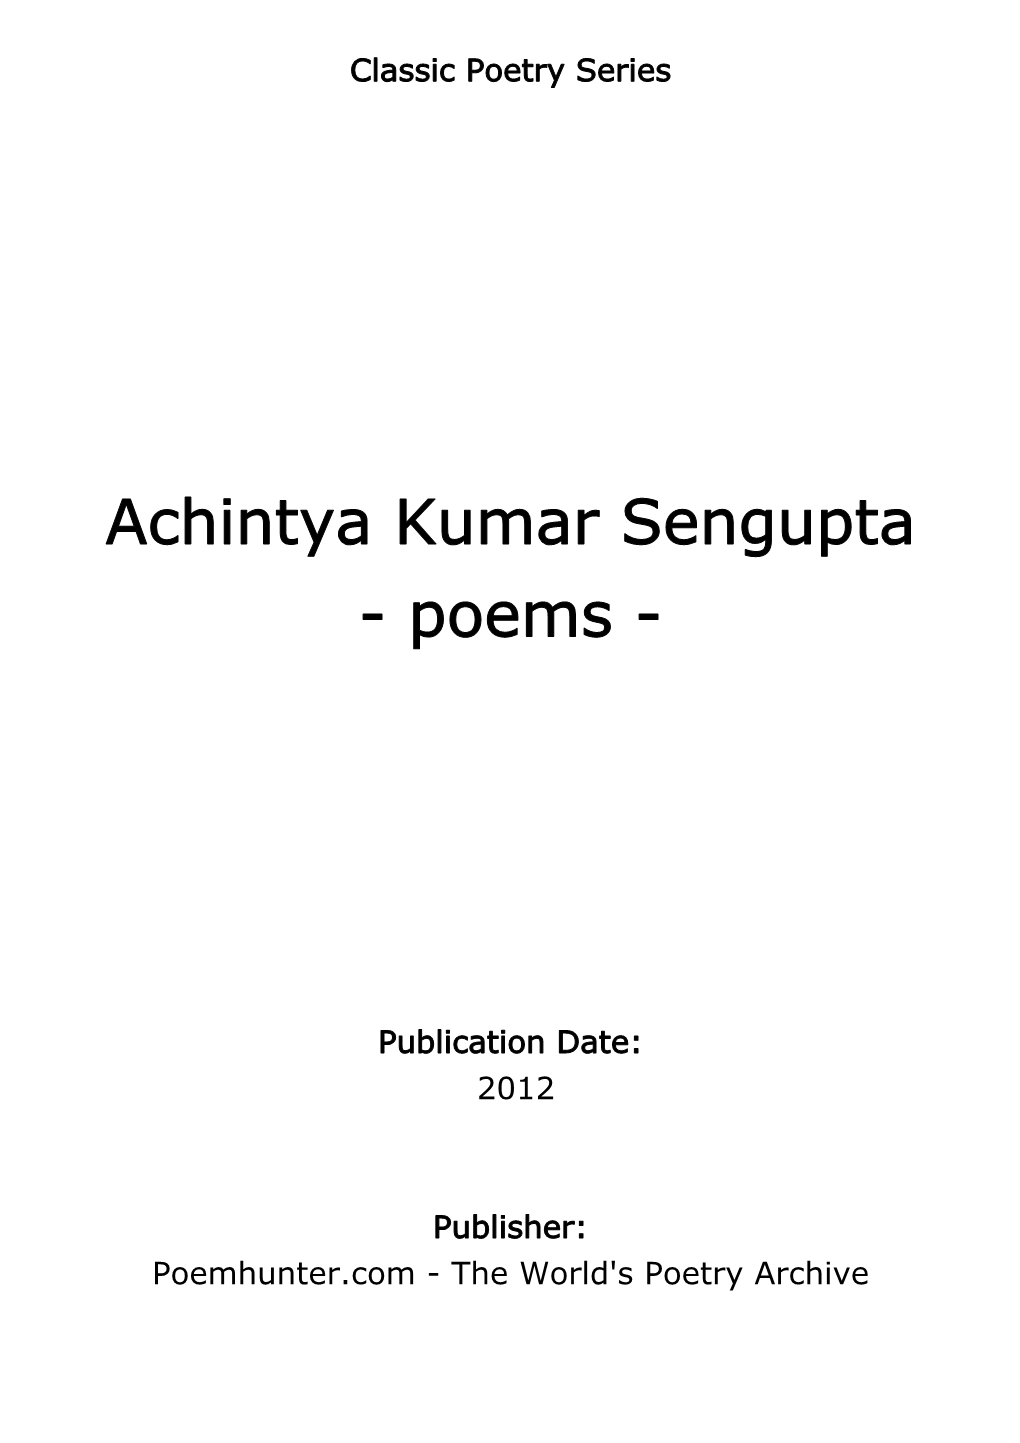 Achintya Kumar Sengupta - Poems